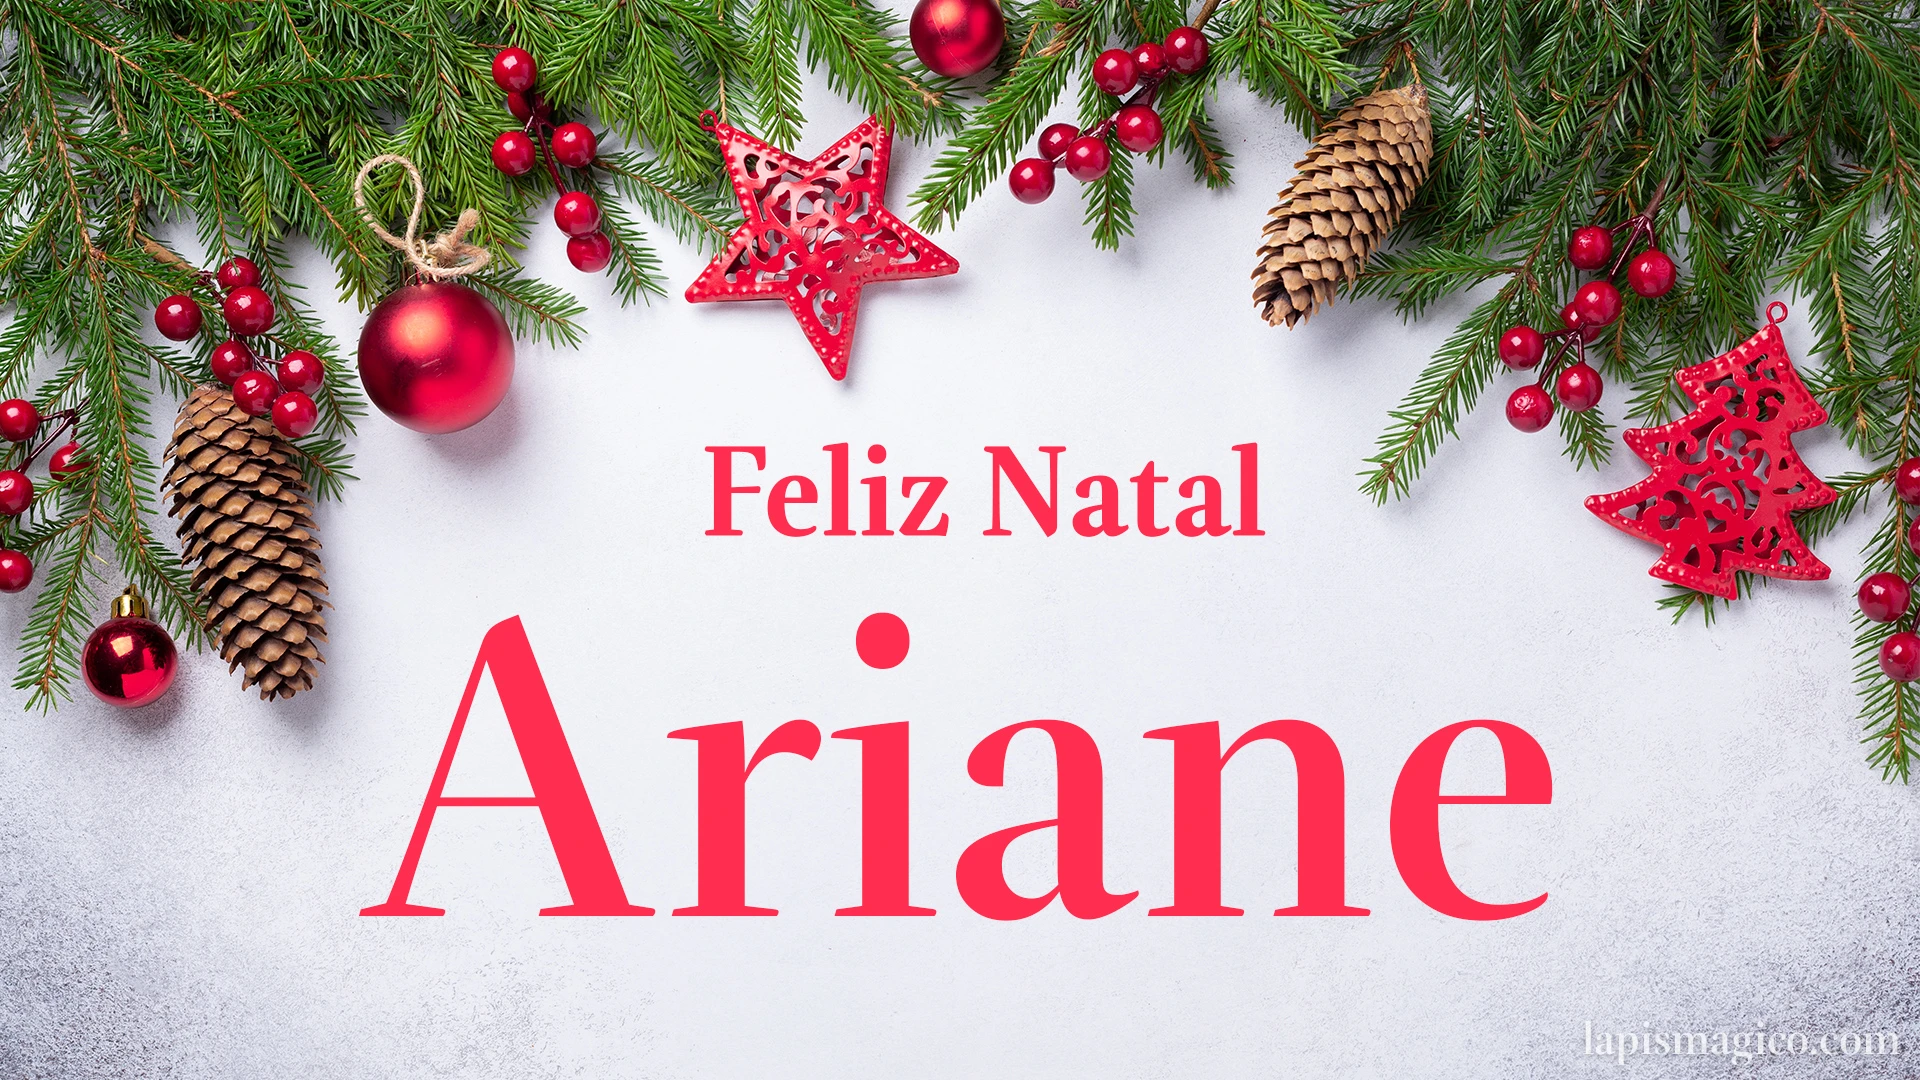 Oh Ariane, cinco postais de Feliz Natal Postal com o teu nome